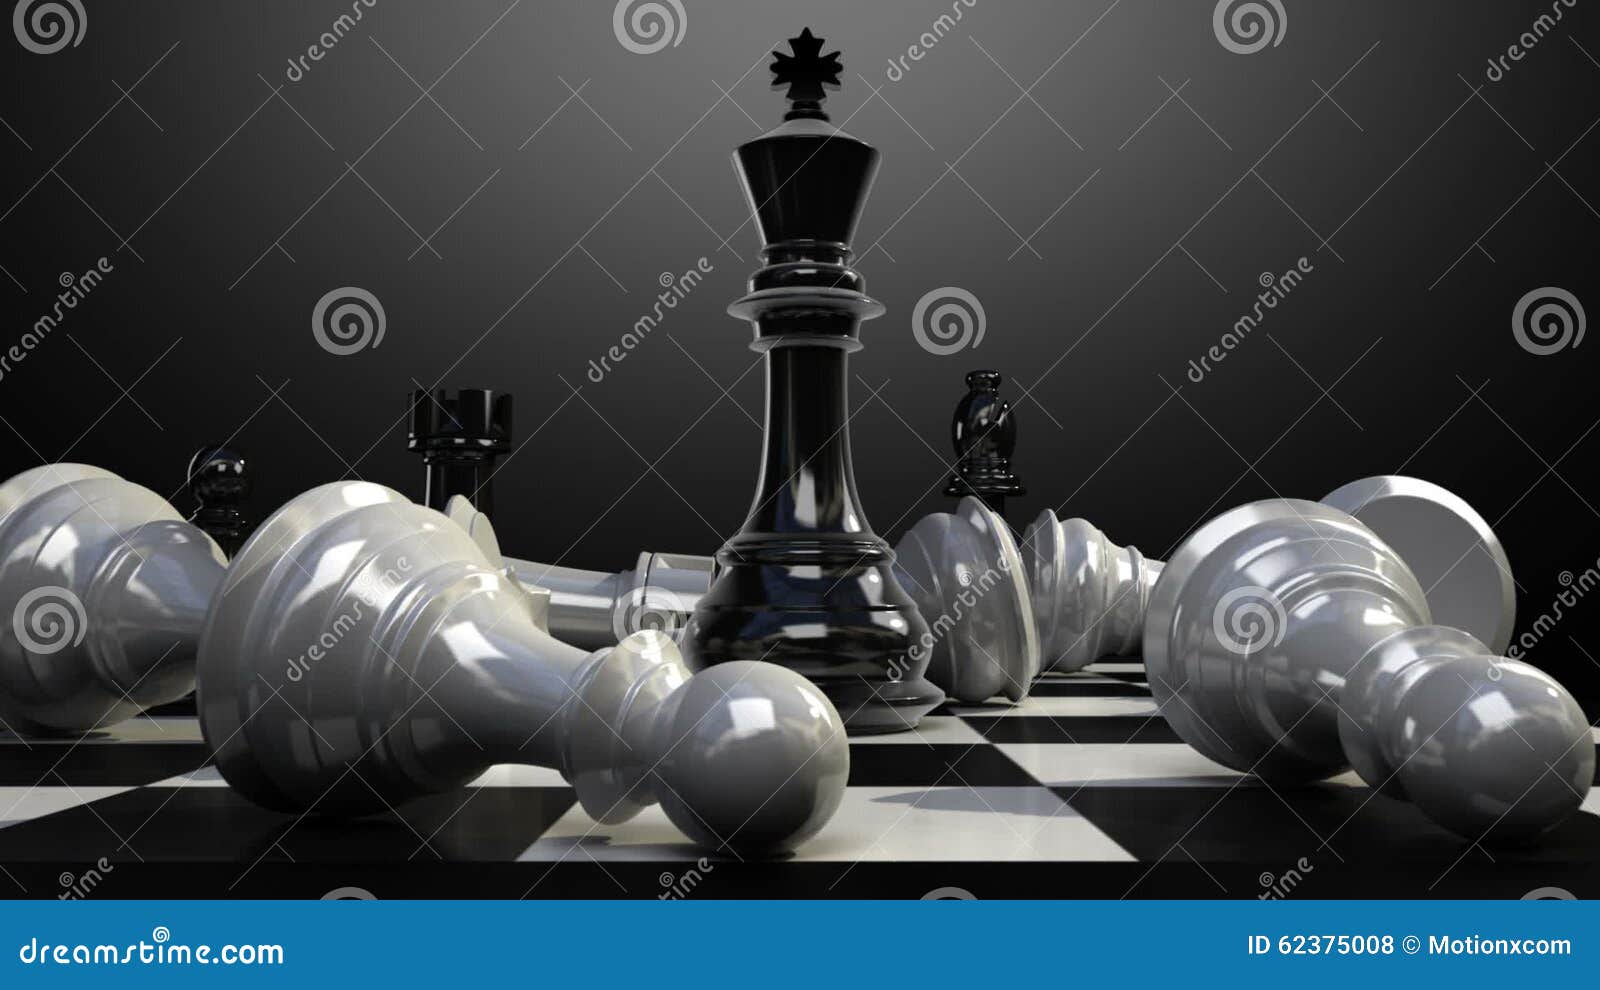 Em primeiro plano, um rei branco está no tabuleiro de xadrez, um